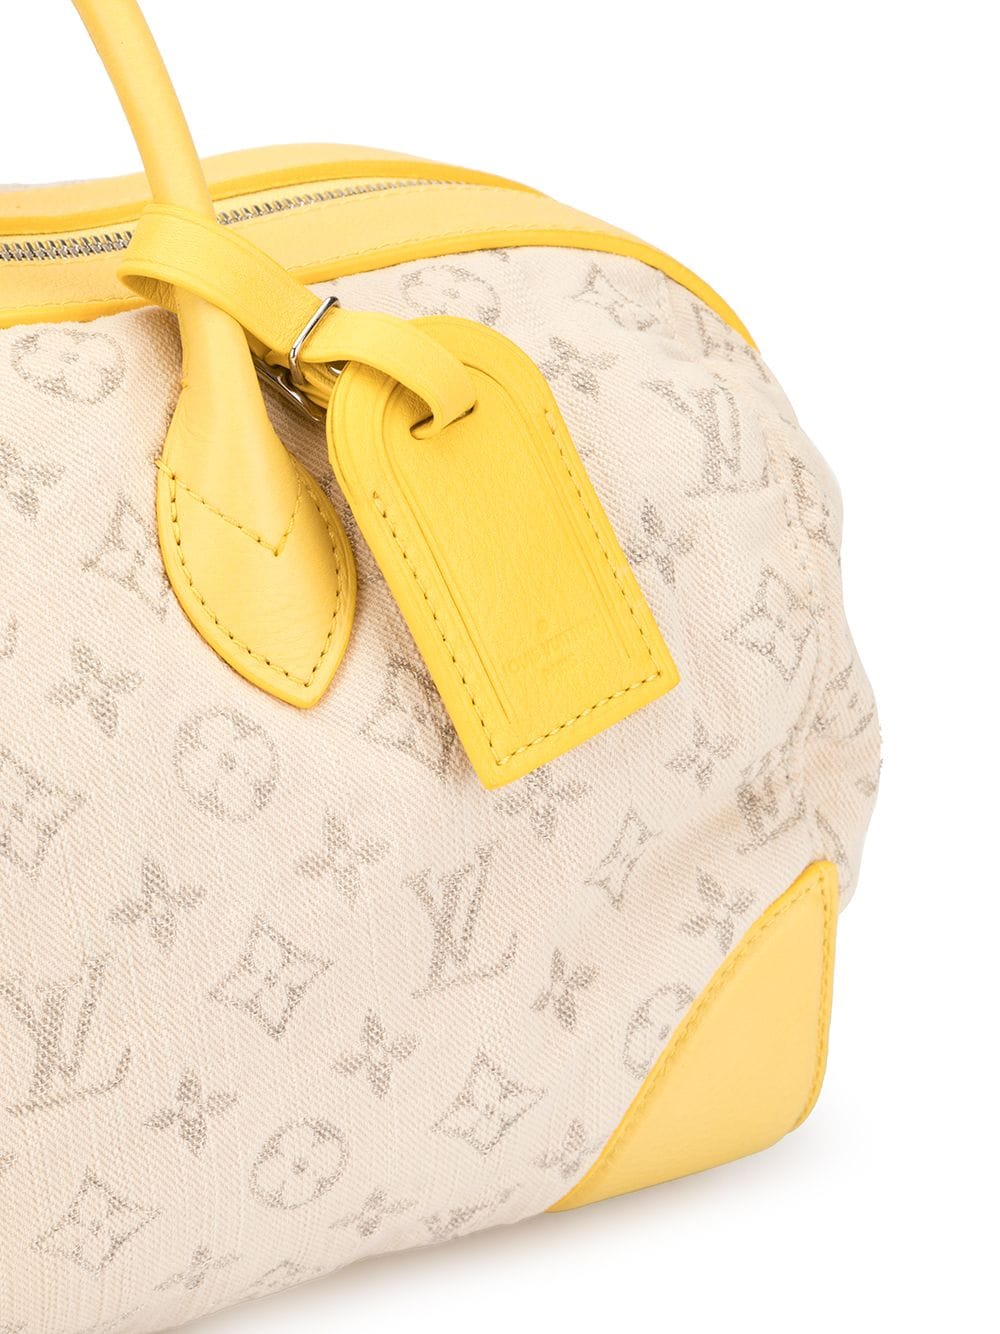 Louis Vuitton Speedy Round Hand Bag